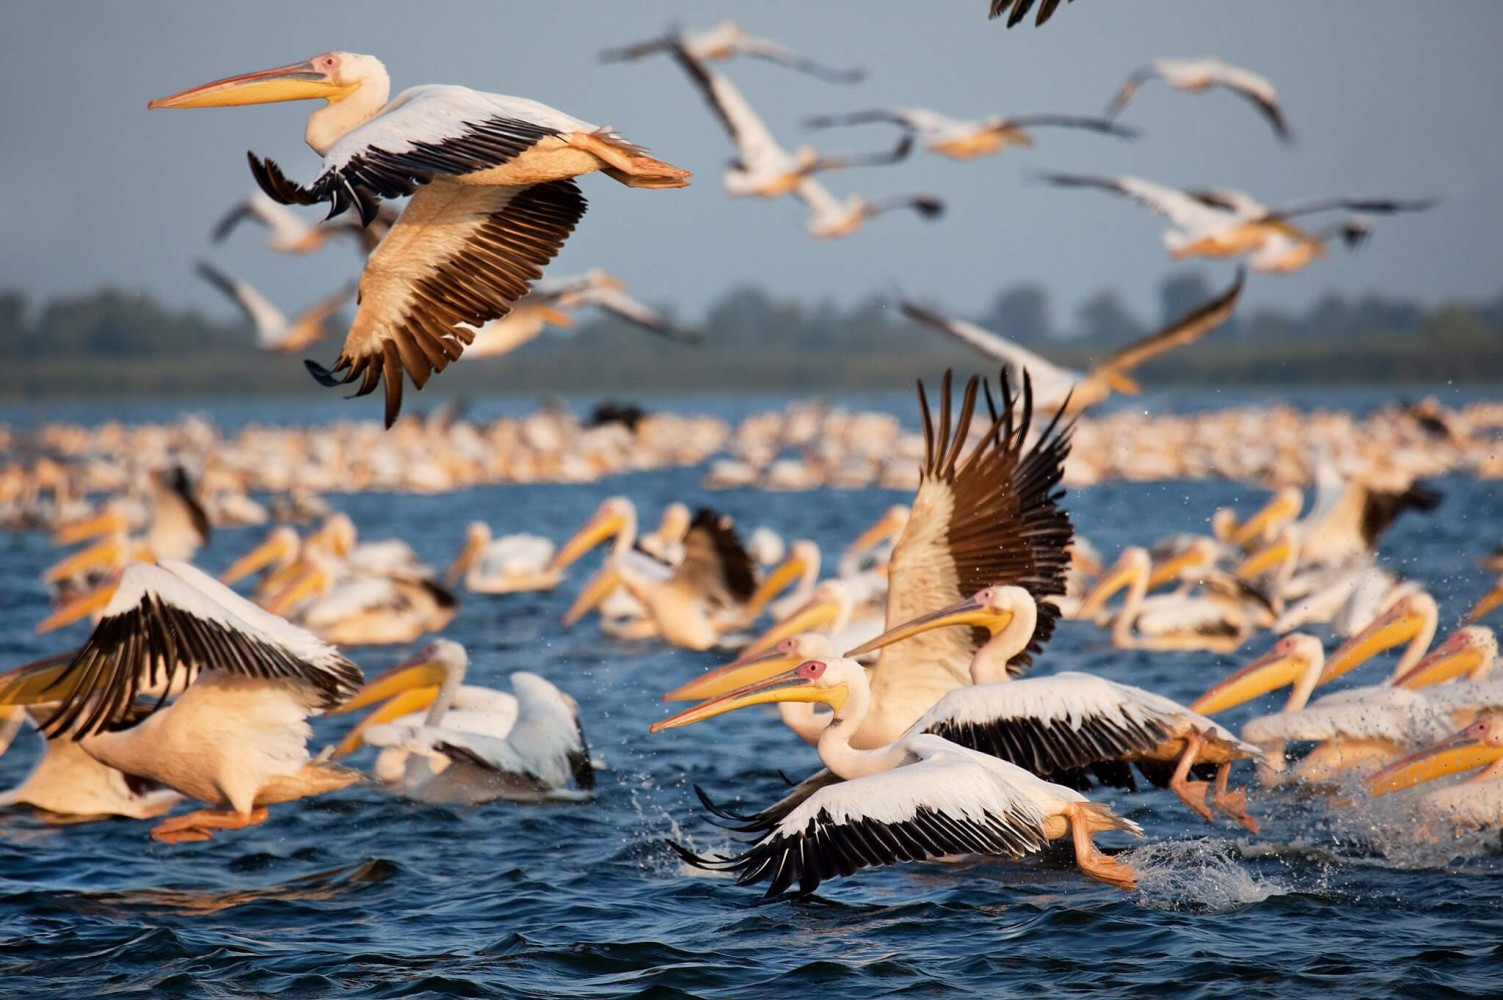 Delta Dunării - pelicani